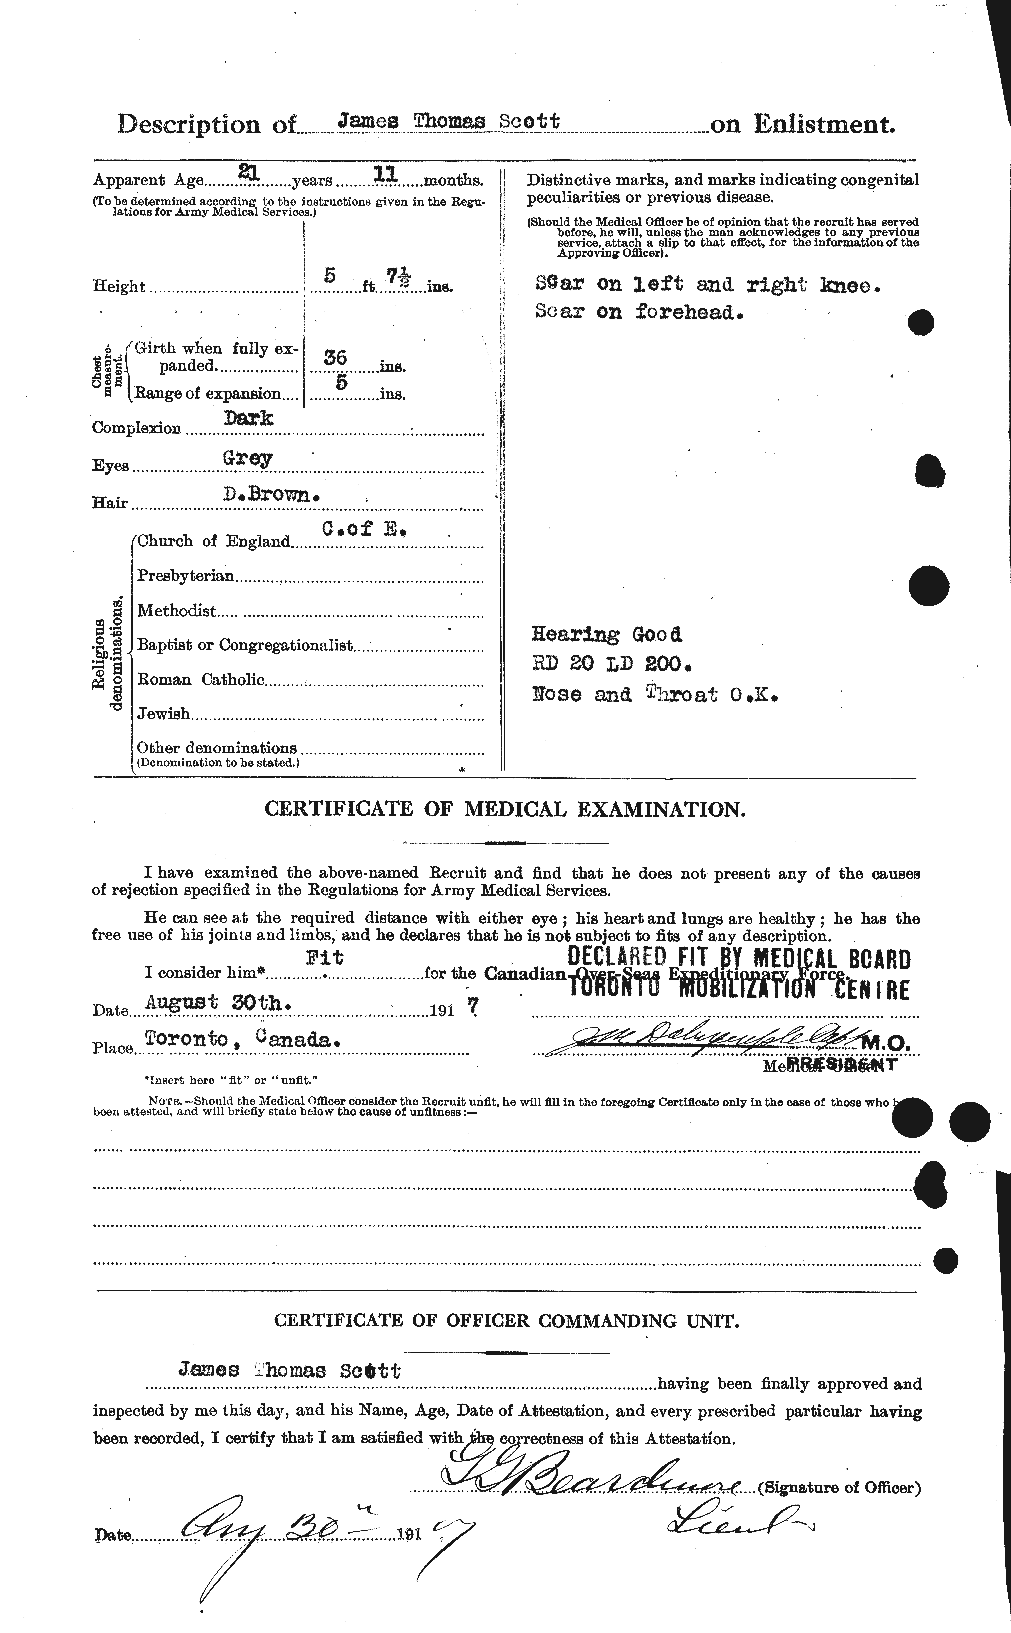 Dossiers du Personnel de la Première Guerre mondiale - CEC 085174b